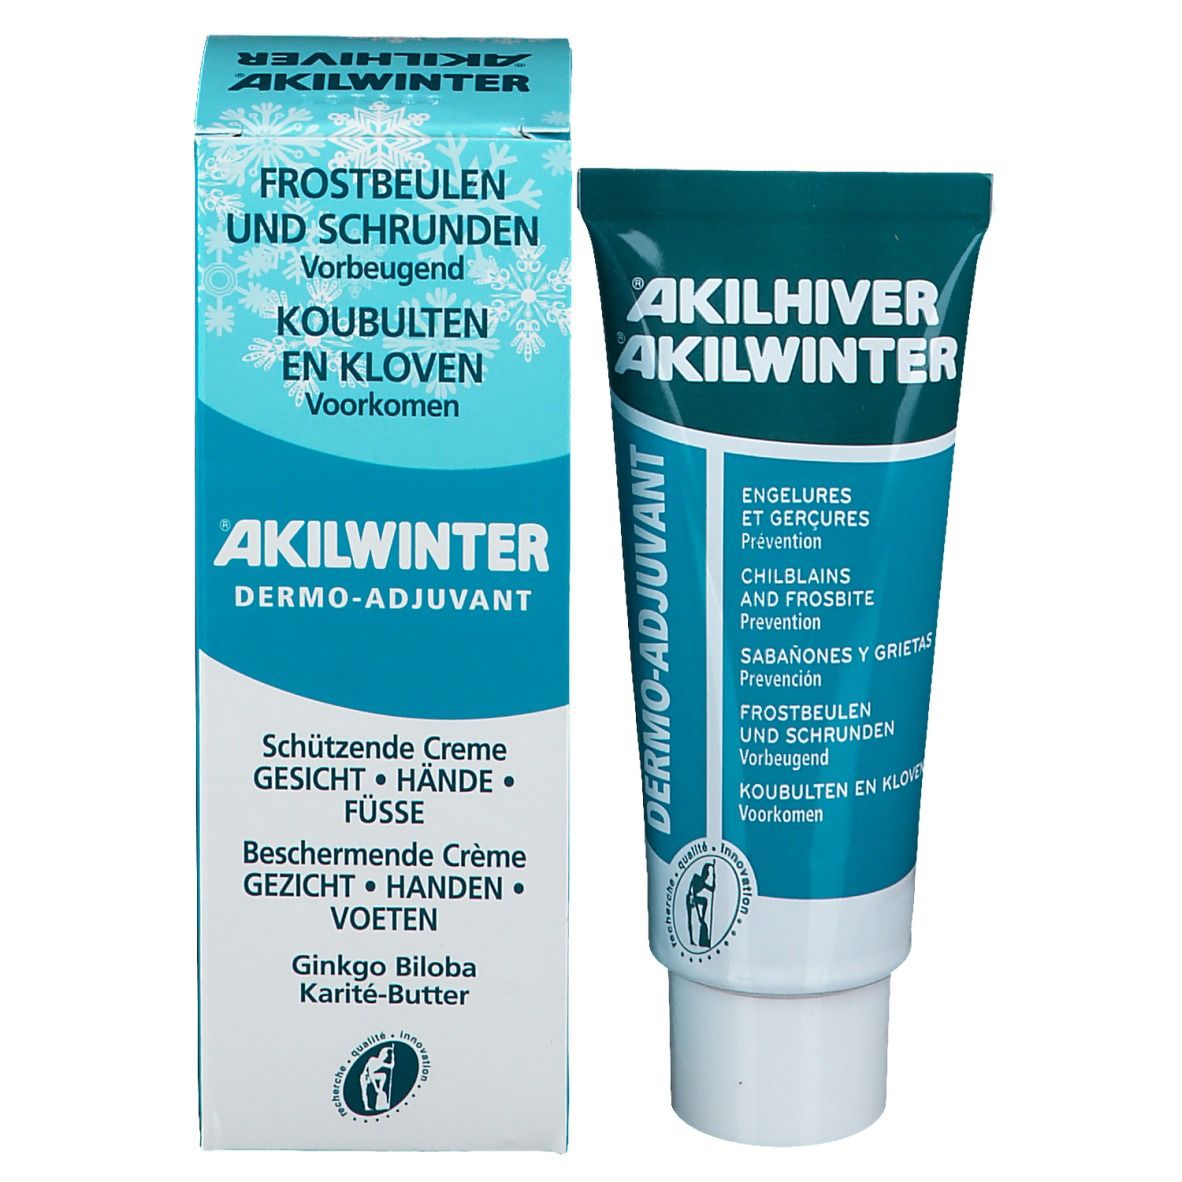 AKILWINTER® Dermo - Adjuvans